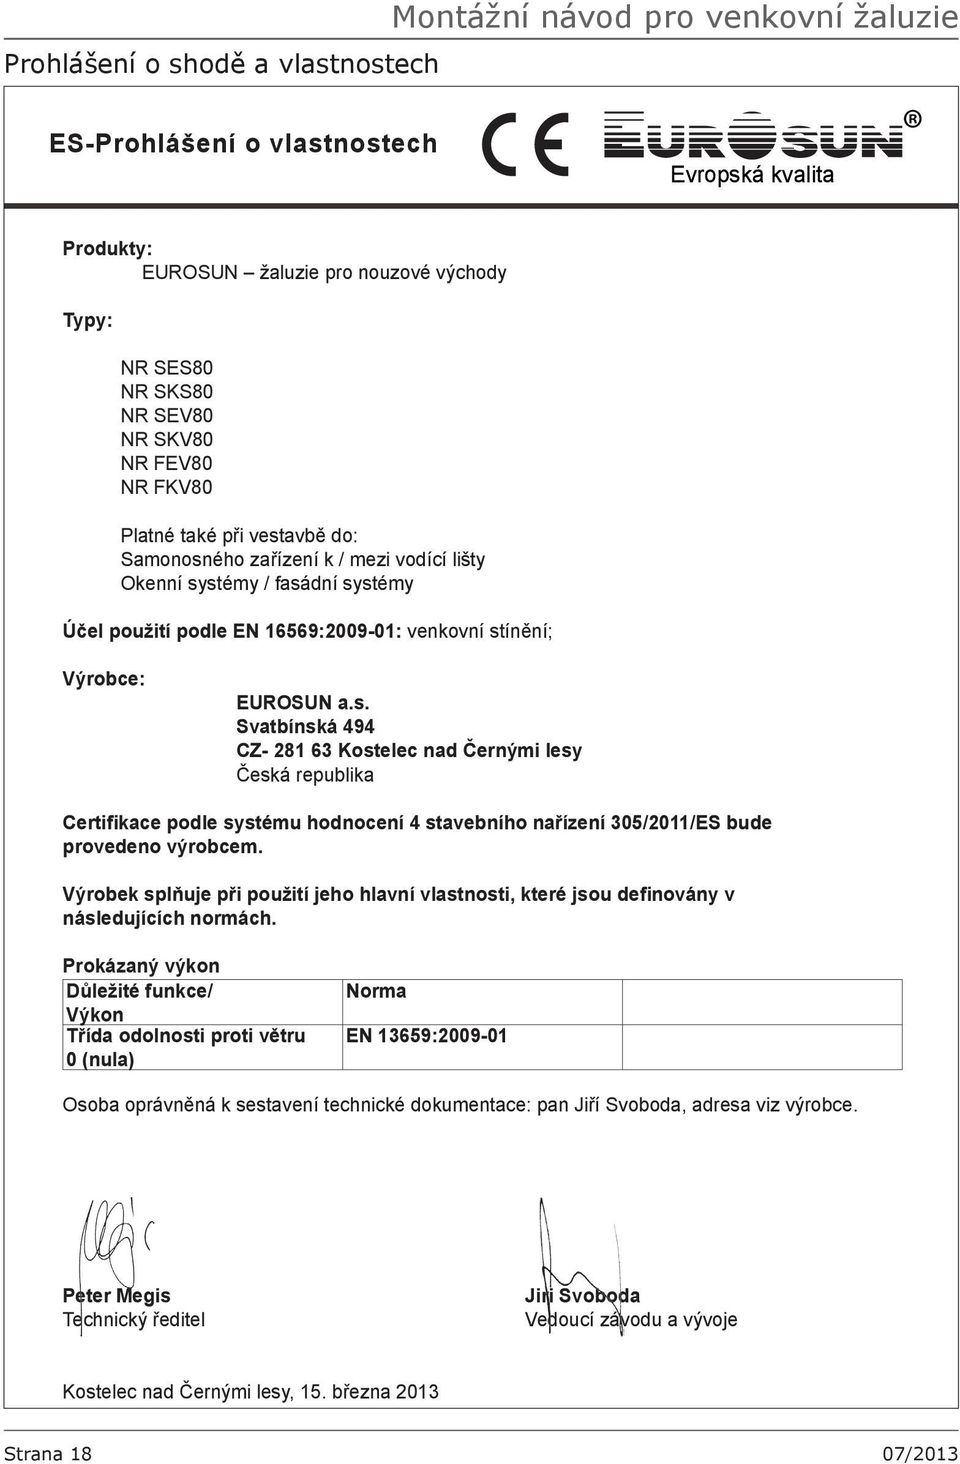 EUROSUN a.s. Svatbínská 494 CZ- 281 63 Kostelec nad Černými lesy Česká republika Certifikace podle systému hodnocení 4 stavebního nařízení 305/2011/ES bude provedeno výrobcem.